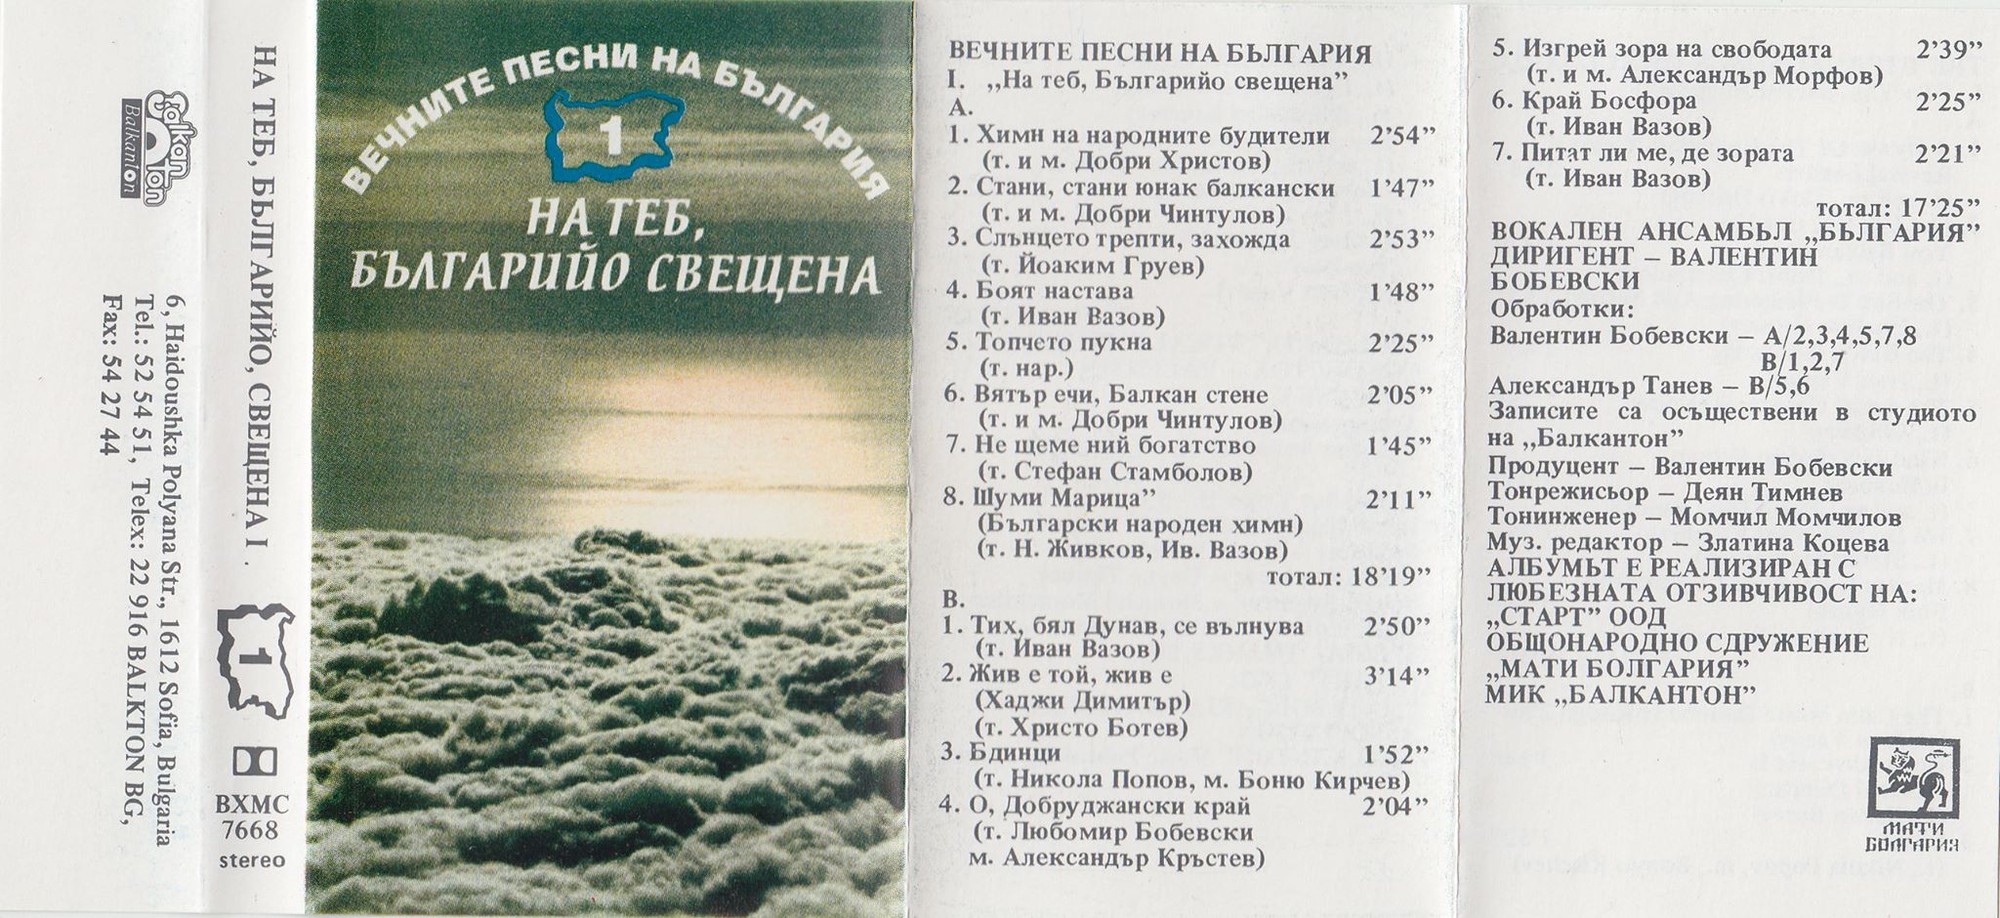 Вечните песни на България (1). На теб, Българийо свещена